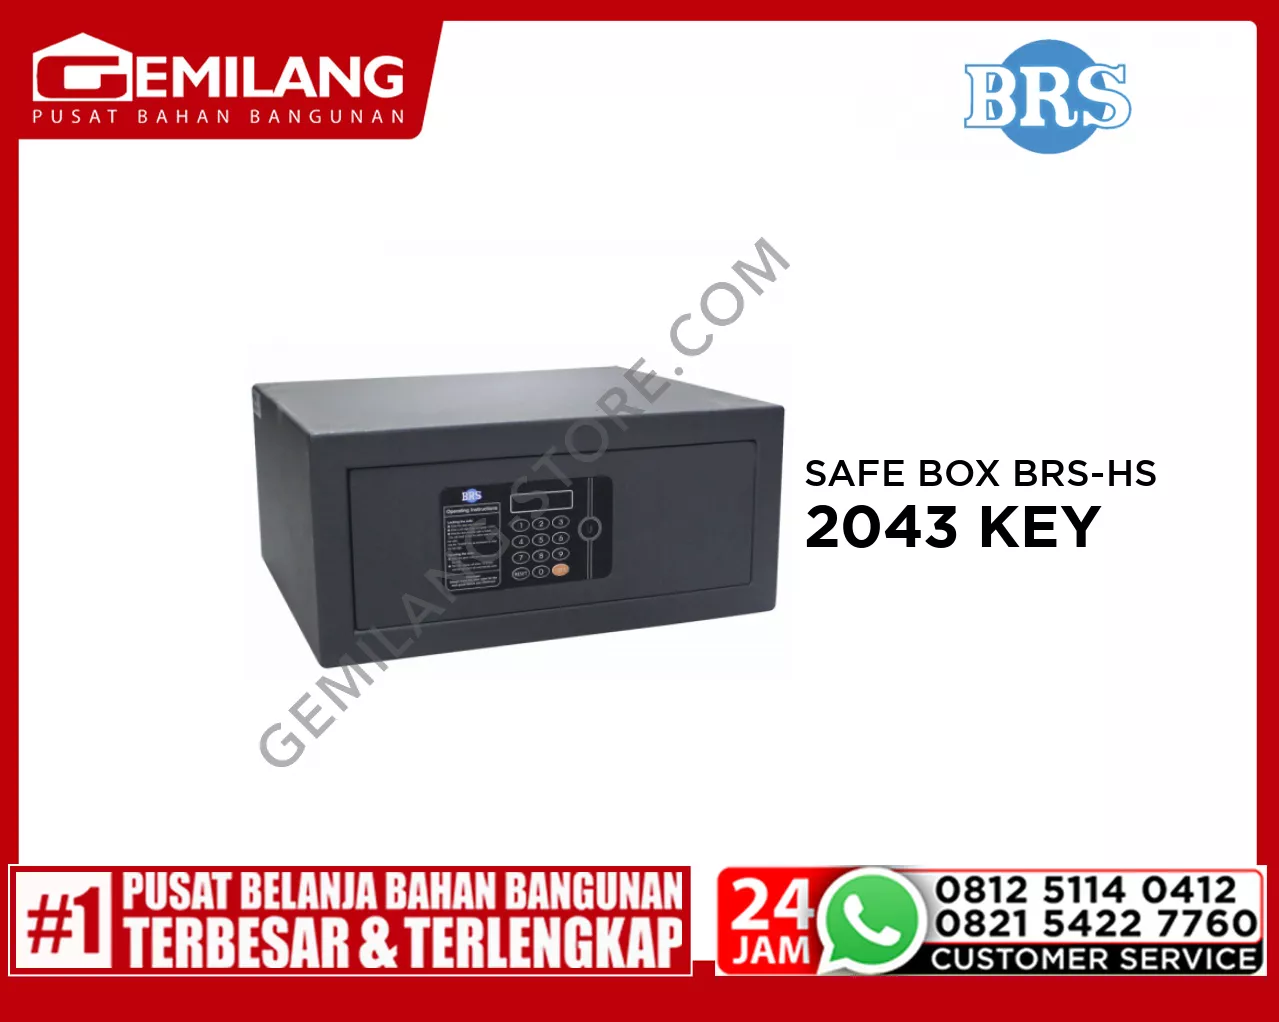 SAFE BOX BRS-HS 2043 KEY SEPARATE 195mmx430mmx370mm BEIGE